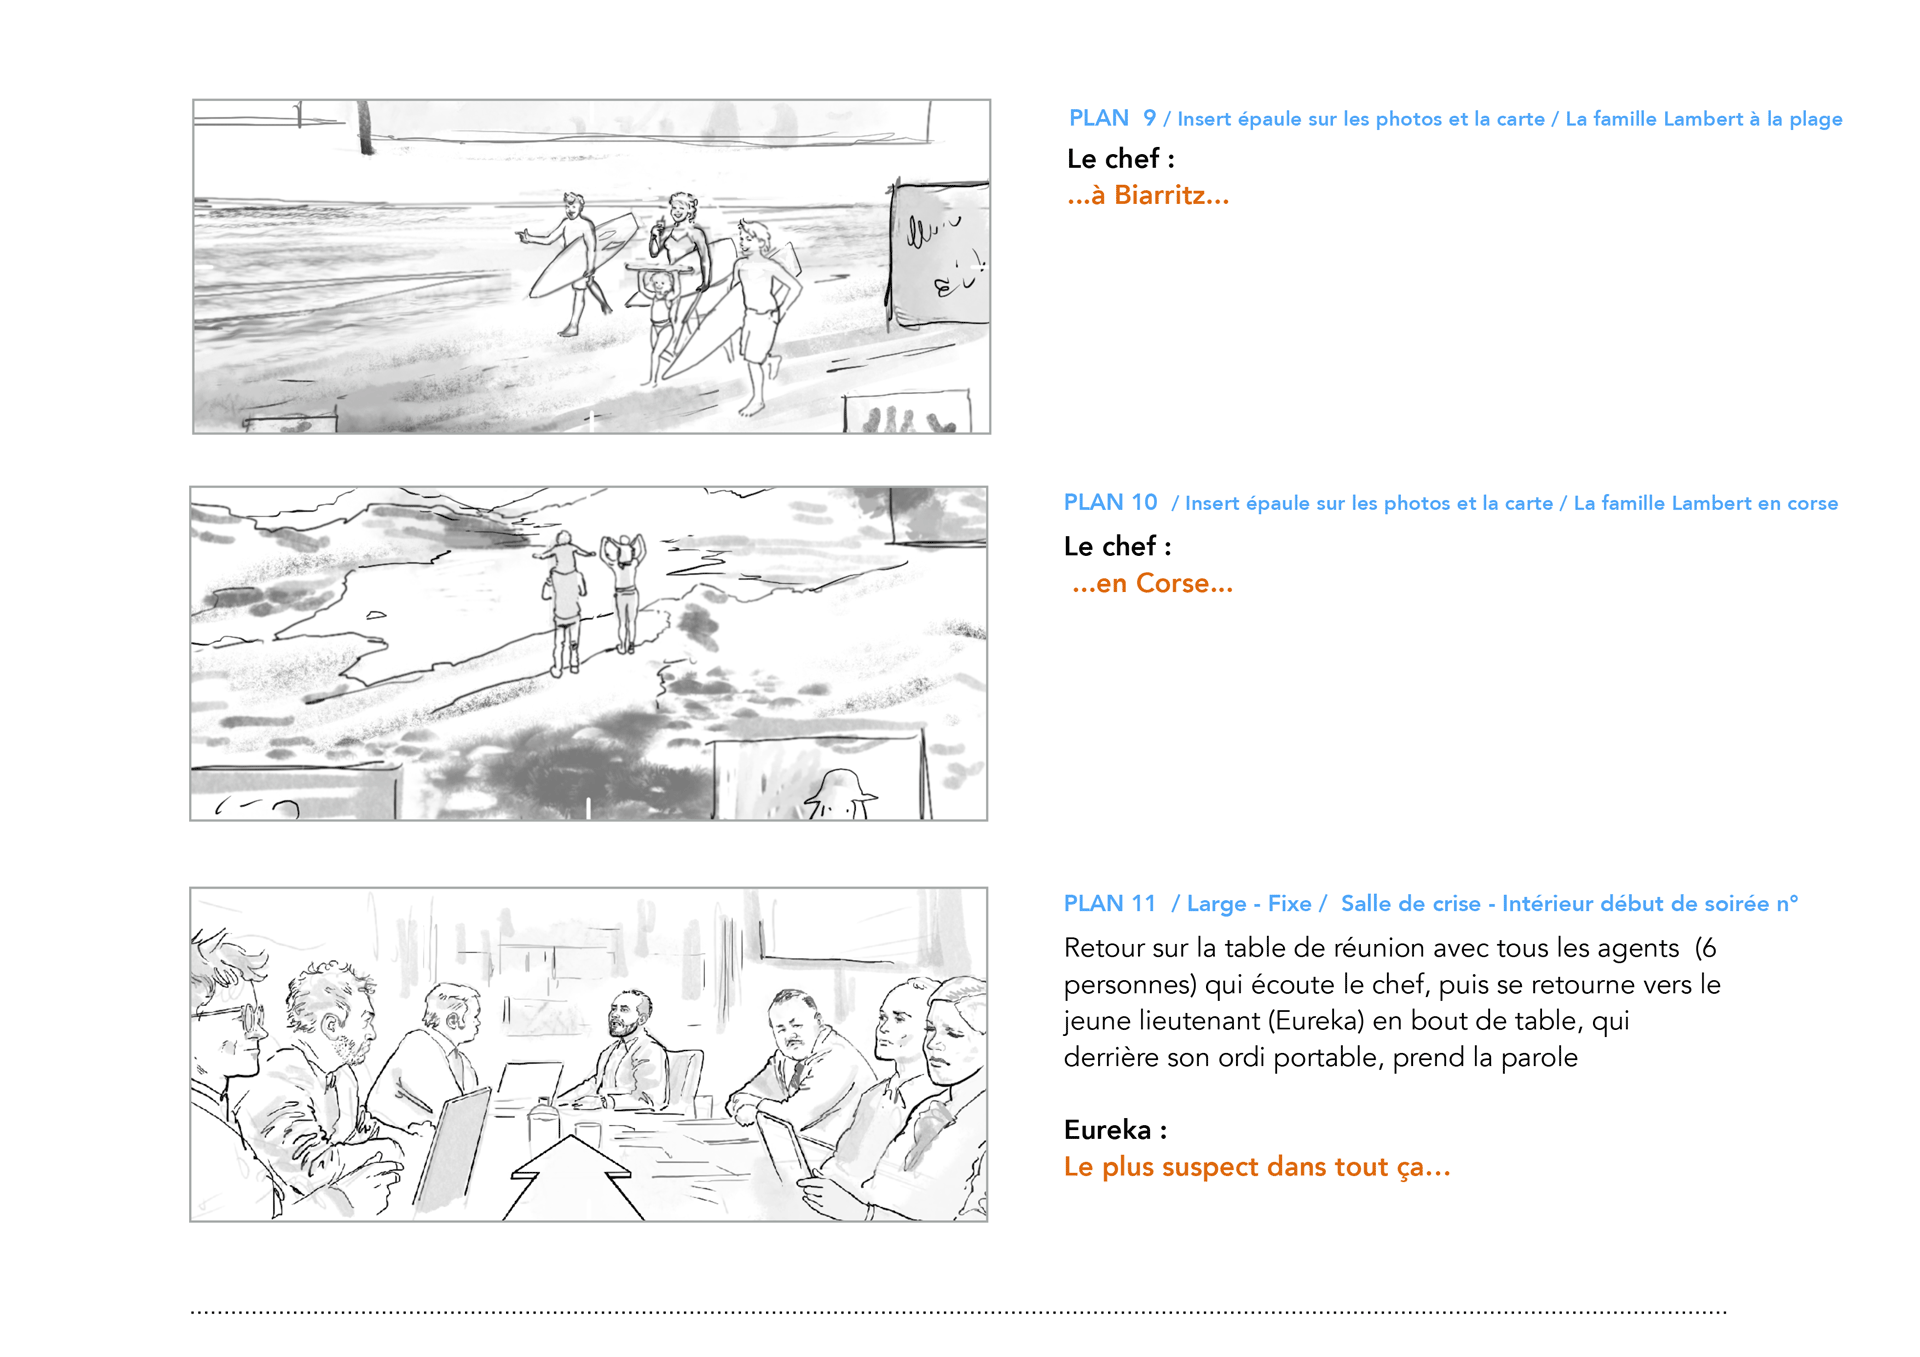 HomeExchange, Opération Lambert, storyboard, page 05